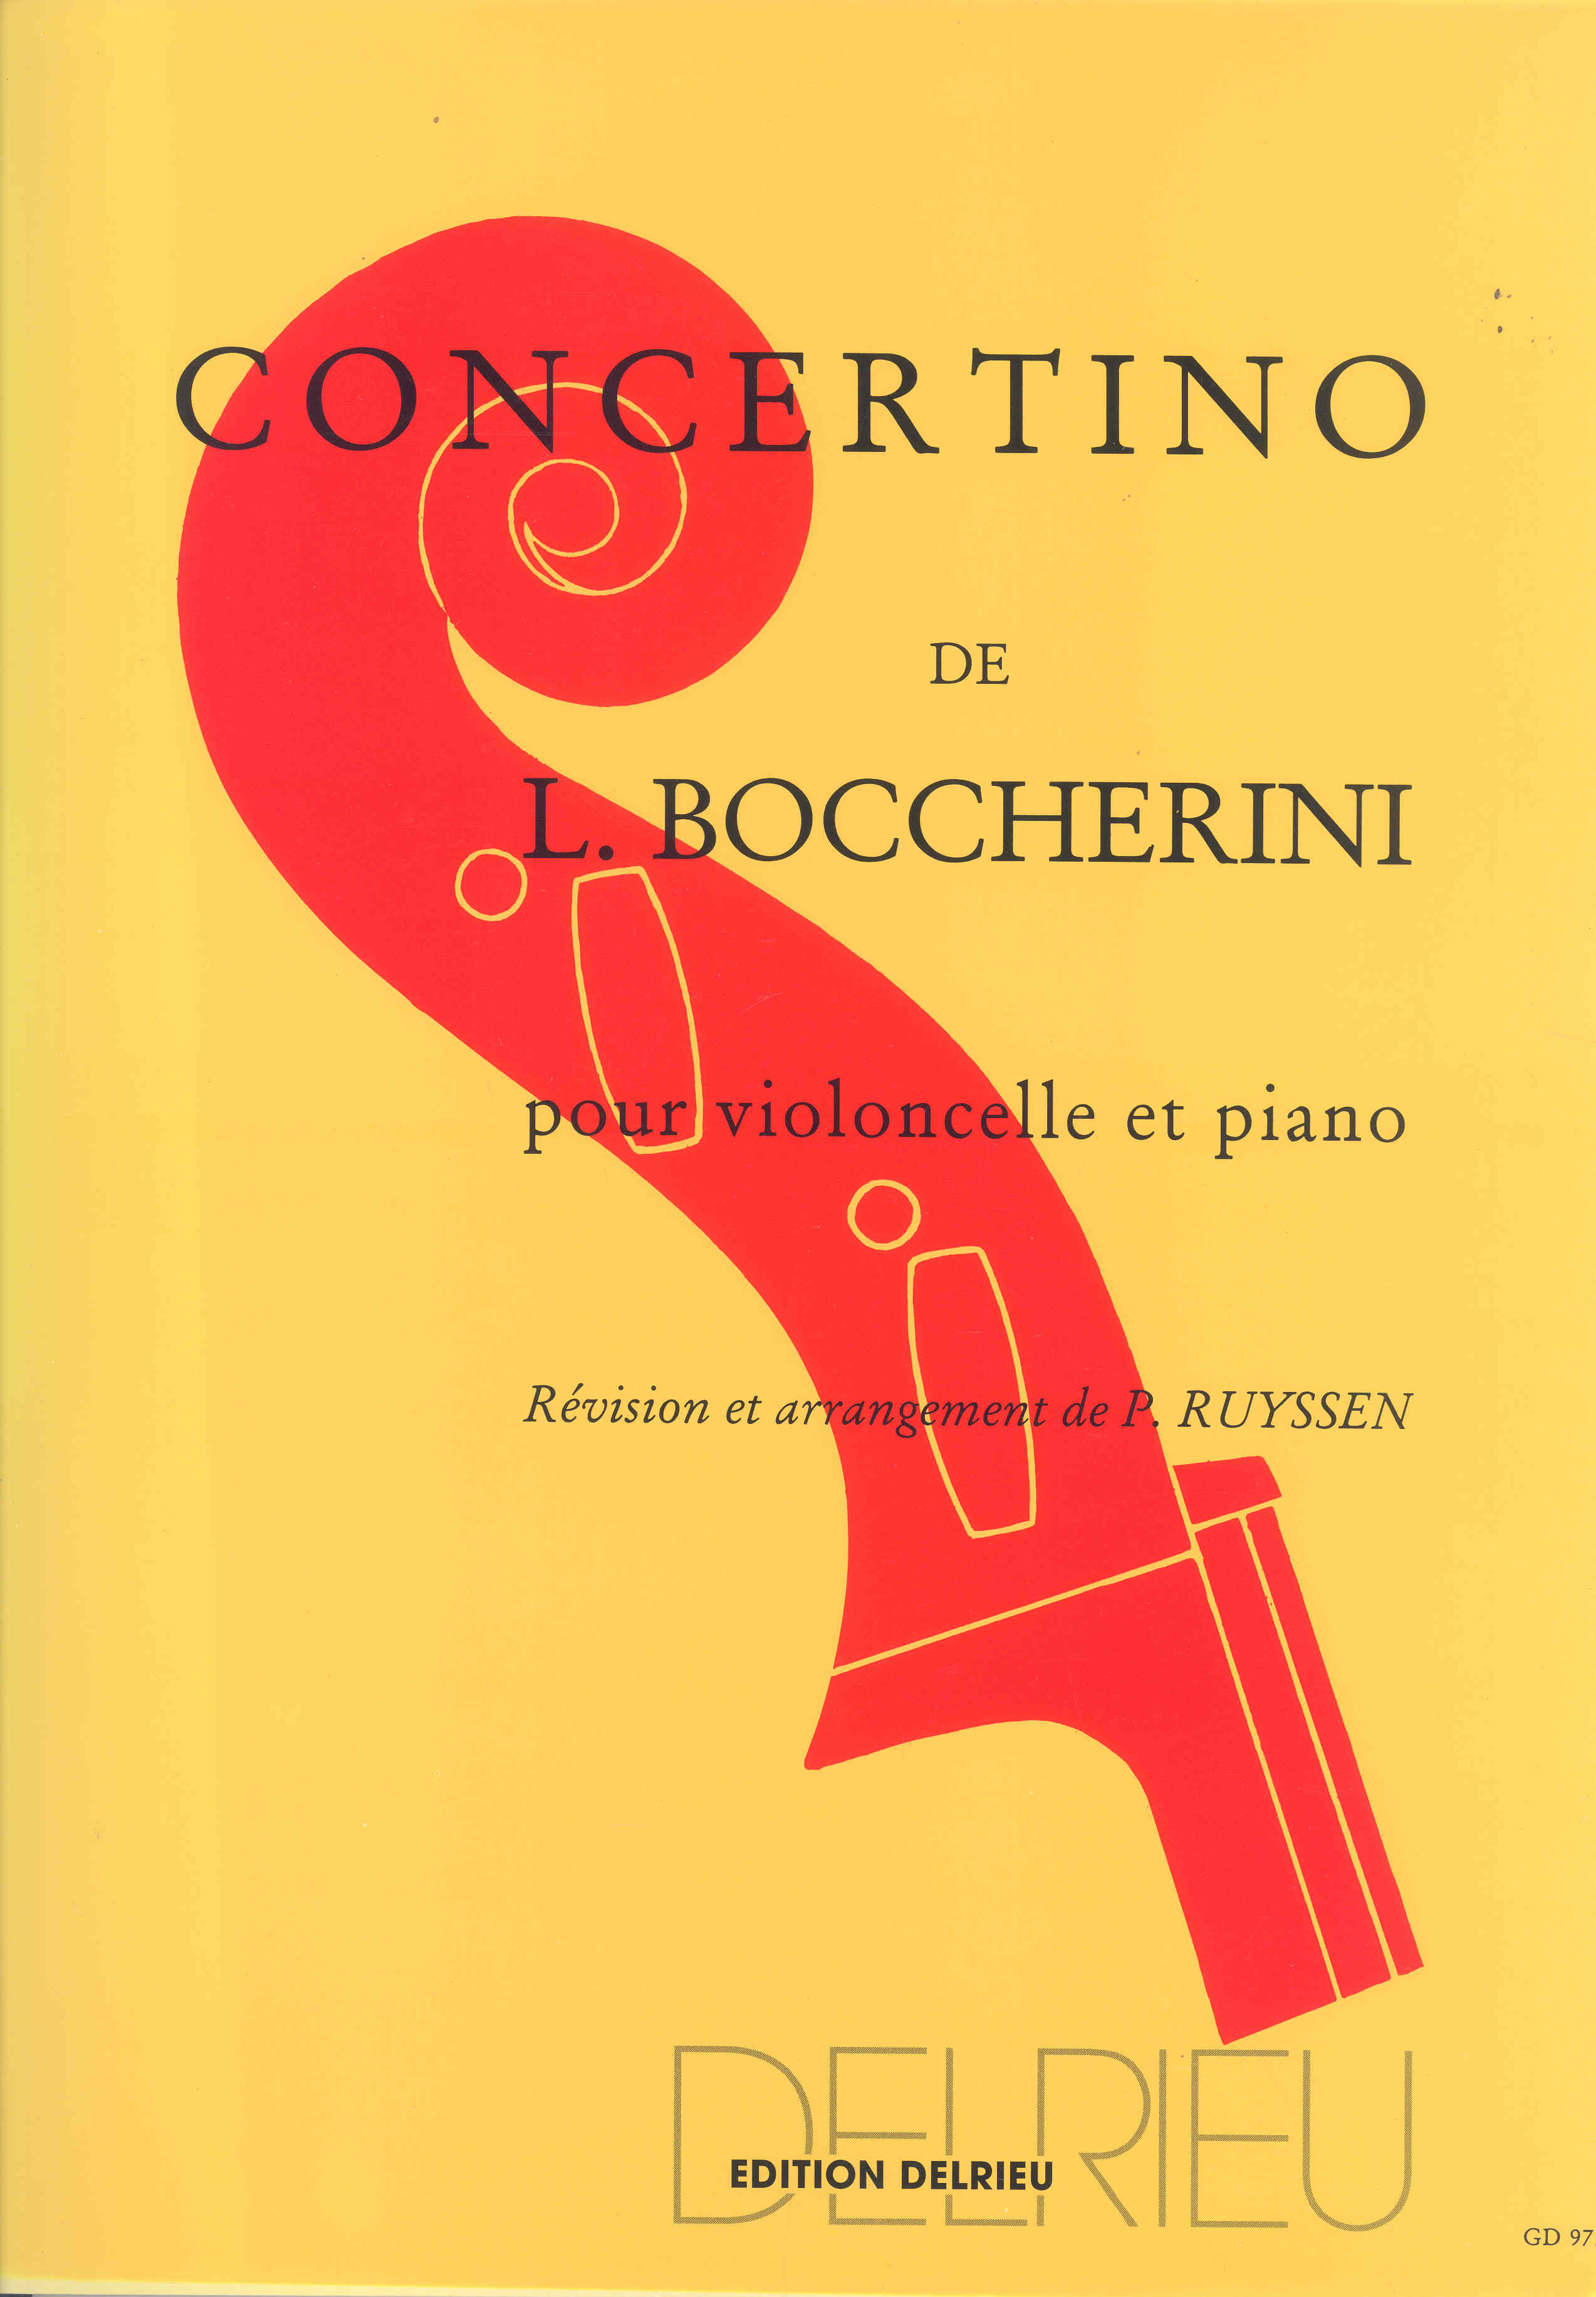 Boccherini Concertino G Major Cello & Piano Sheet Music Songbook